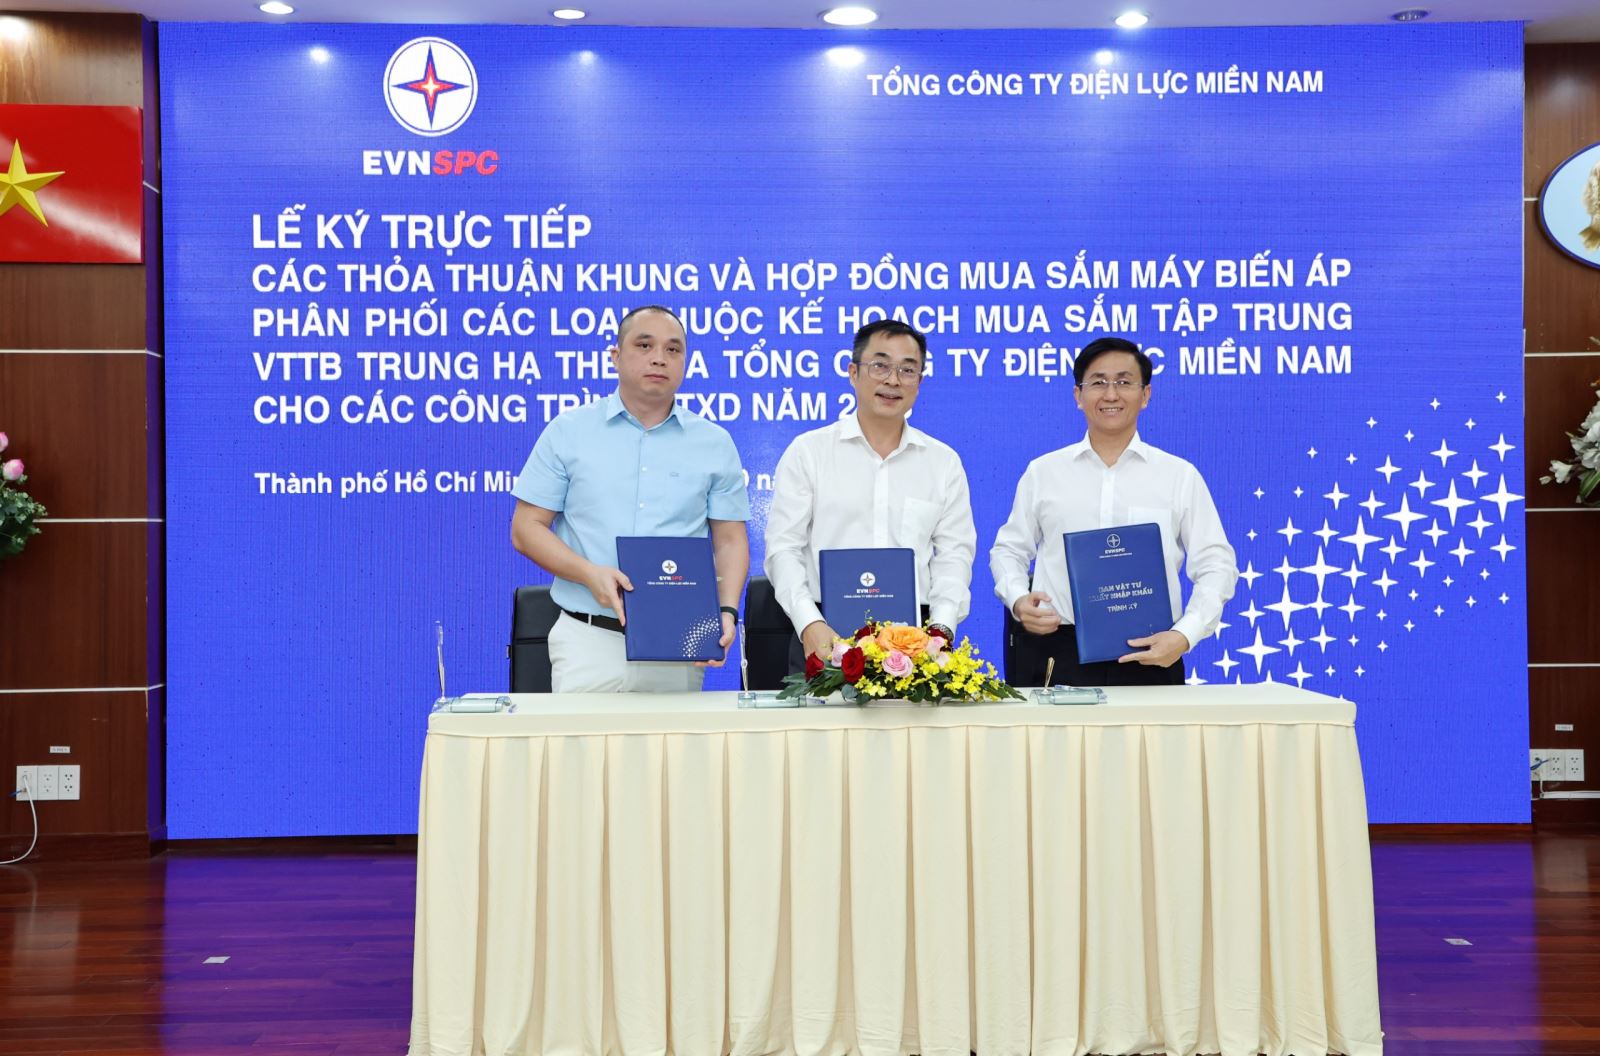 Ông Lê Minh Quốc Việt – Giám đốc Công ty Điện lực Bình Dương (ngoài cùng bên phải) ký Hợp đồng với Liên danh Công ty Cổ phần cơ điện Thủ Đức và Công ty cổ phần thiết bị điện & chế tạo biến thế Hà Nội (Liên danh EMC-CTC) cho Gói 2 - Máy biến áp phân phối 1 pha (75kVA-100kVA). Ảnh: EVNSPC